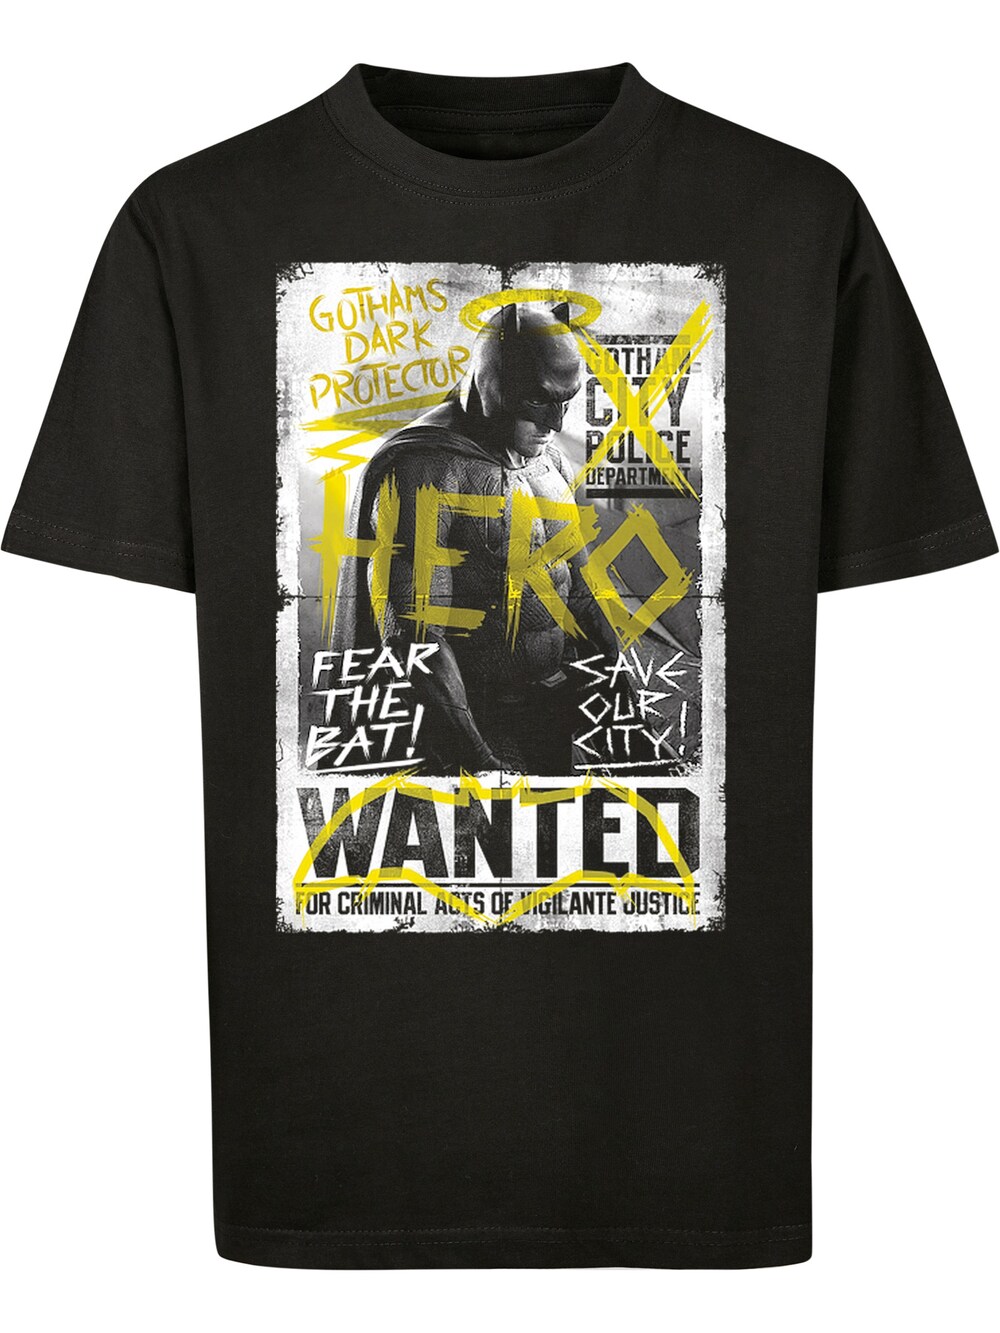 Рубашка F4Nt4Stic Batman vs Superman Wanted, черный